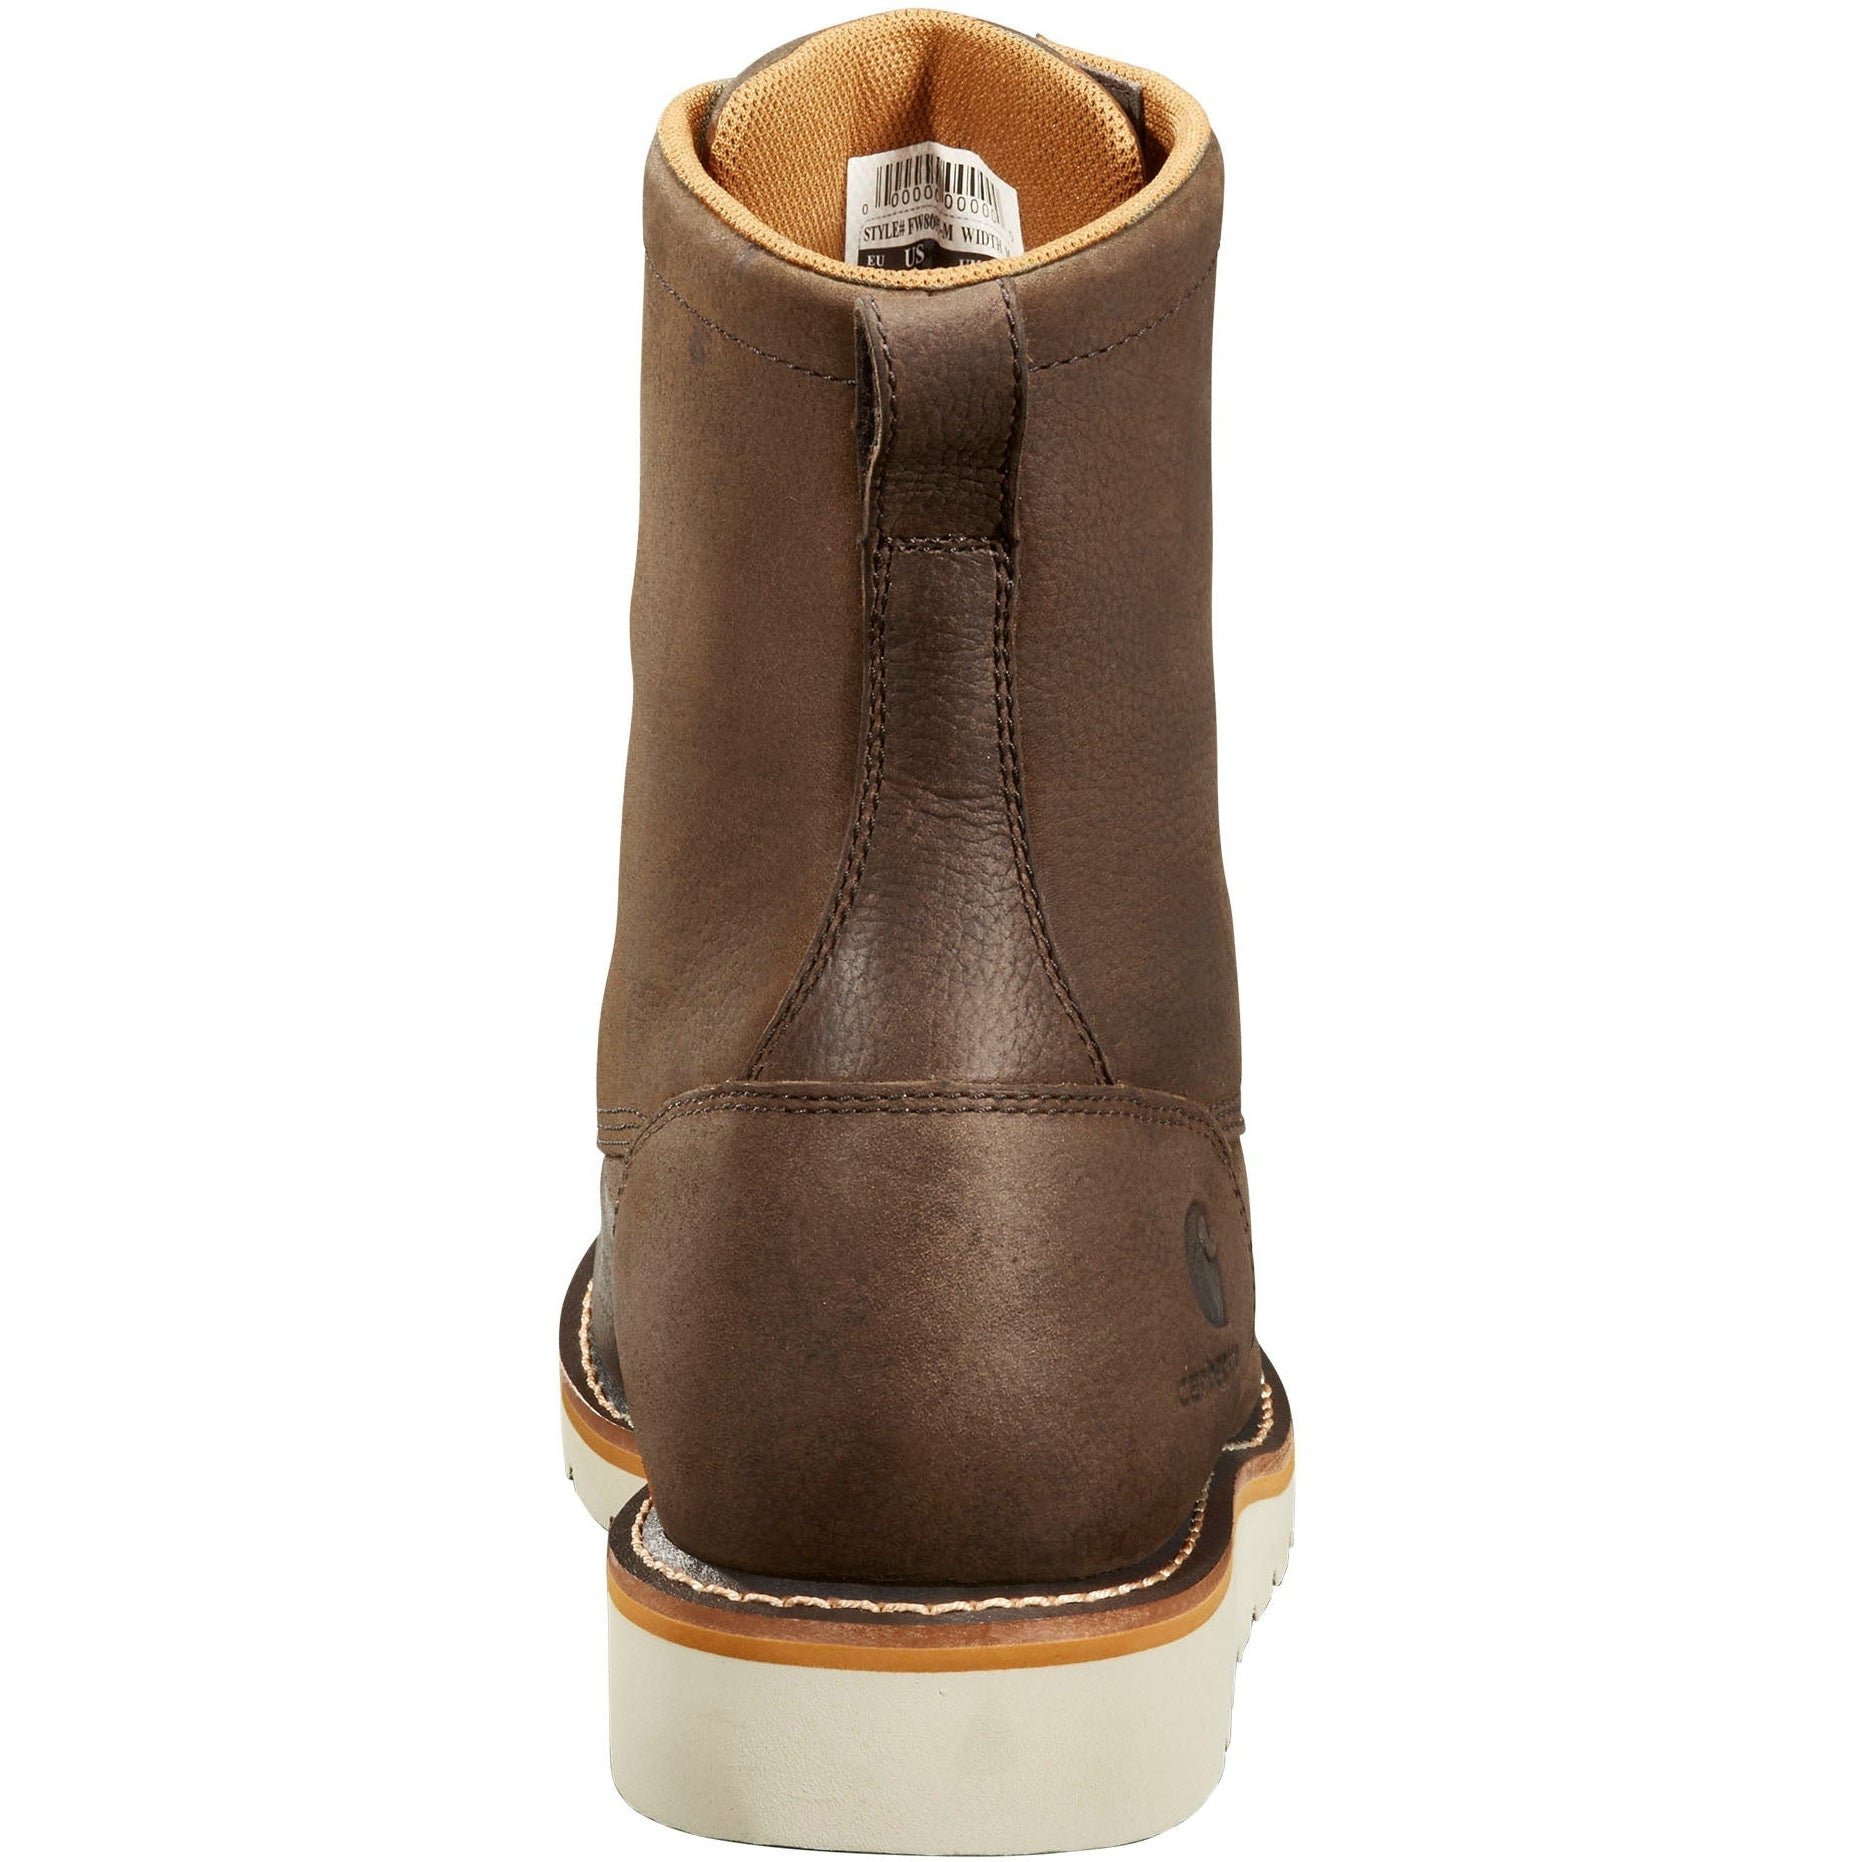 Carhartt Men's 8" WP Soft Toe Wedge Work Boot - Dark Brown - FW8095-M  - Overlook Boots